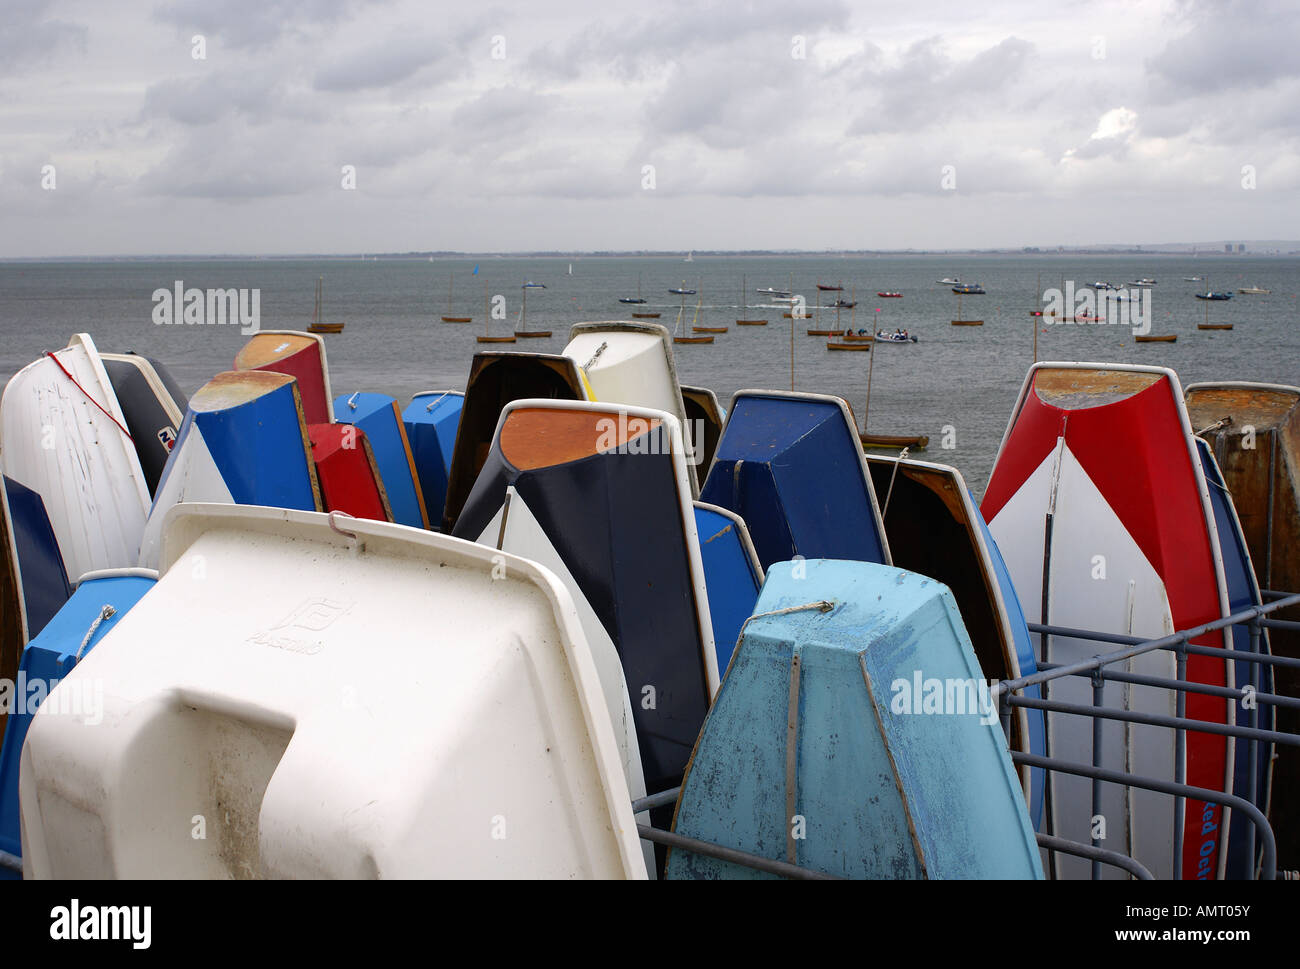 Bateaux stockés au yacht club de la mer sur l'île de Wight UK Banque D'Images